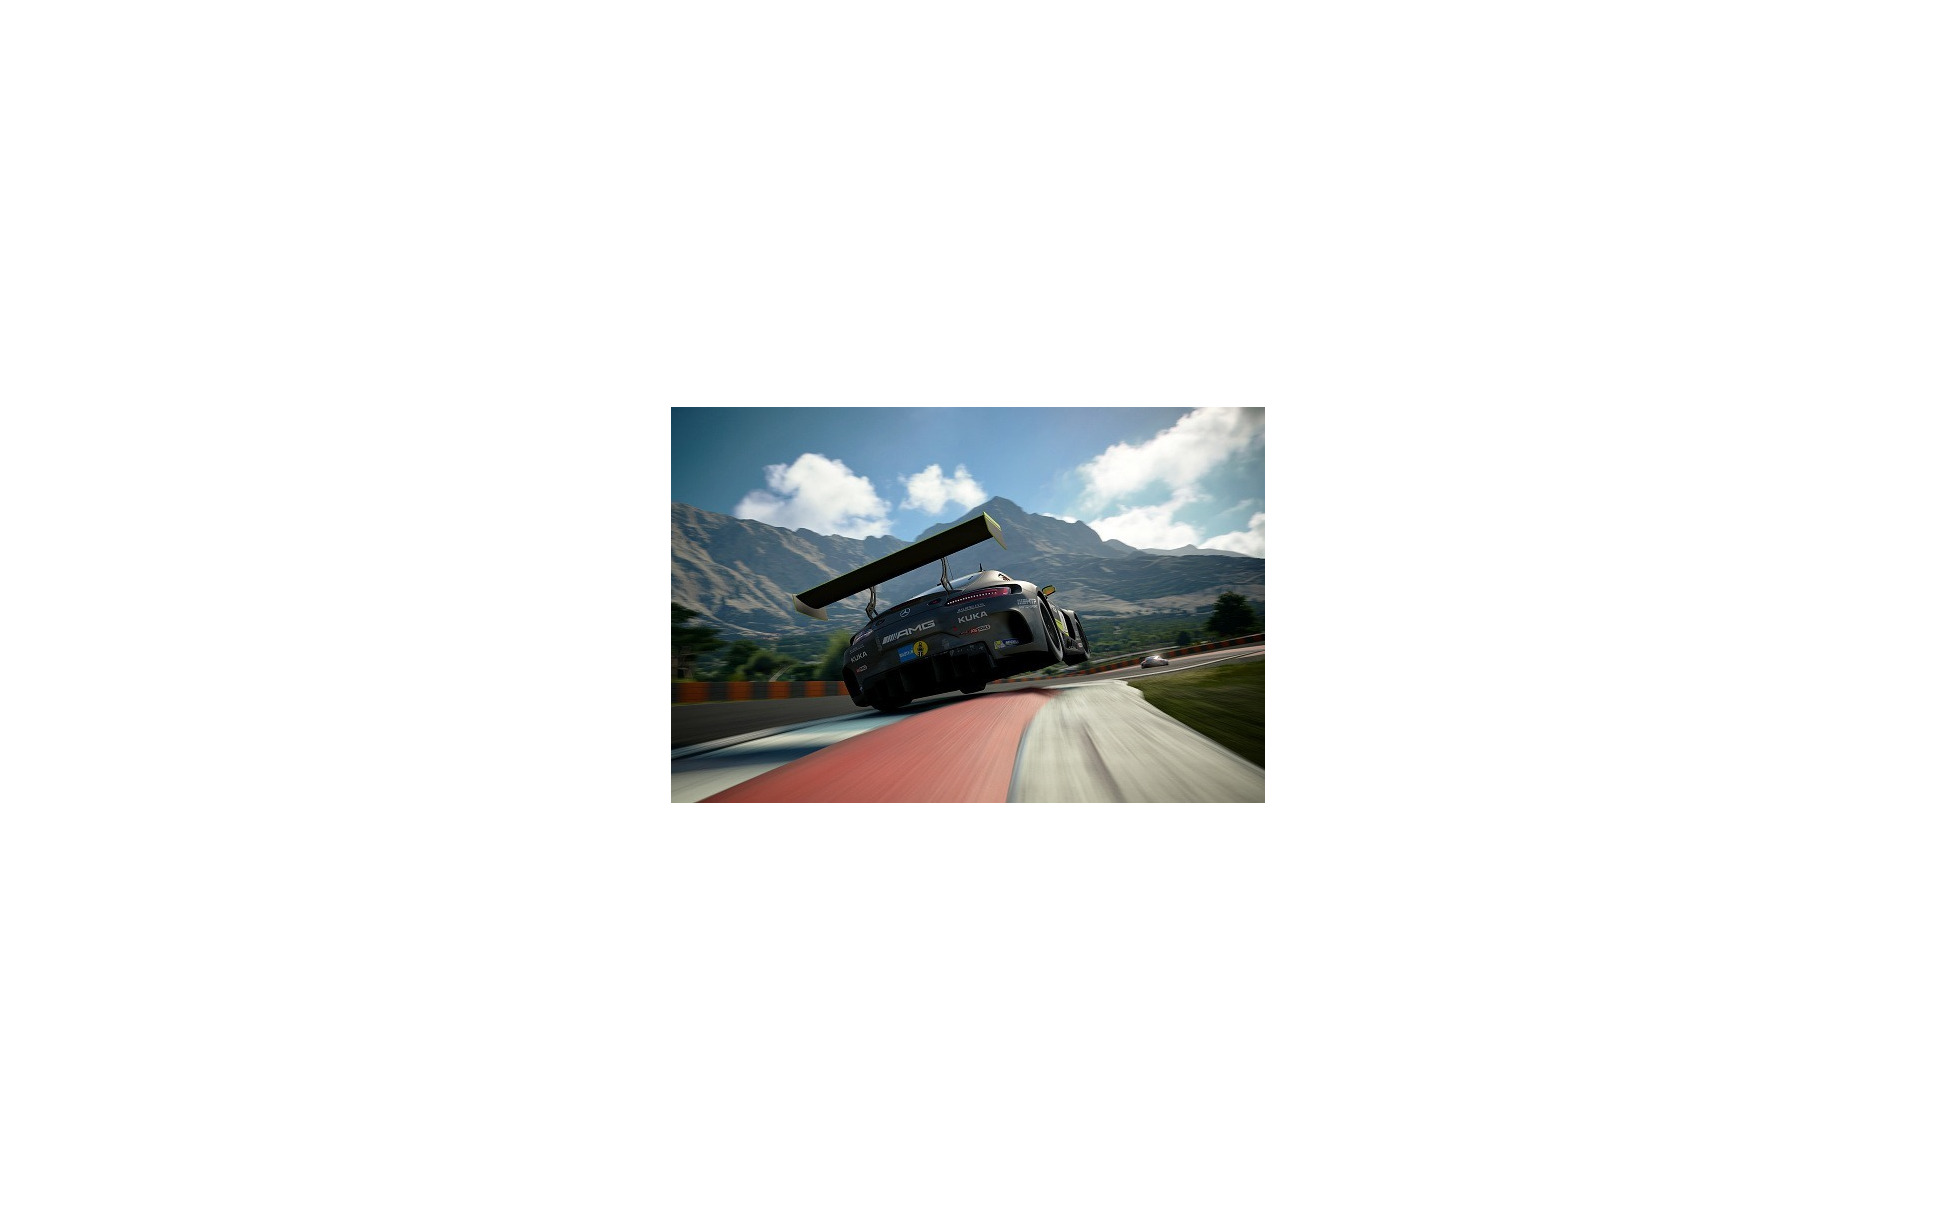 （C）1189575308,Gran Turismo Clive Rose